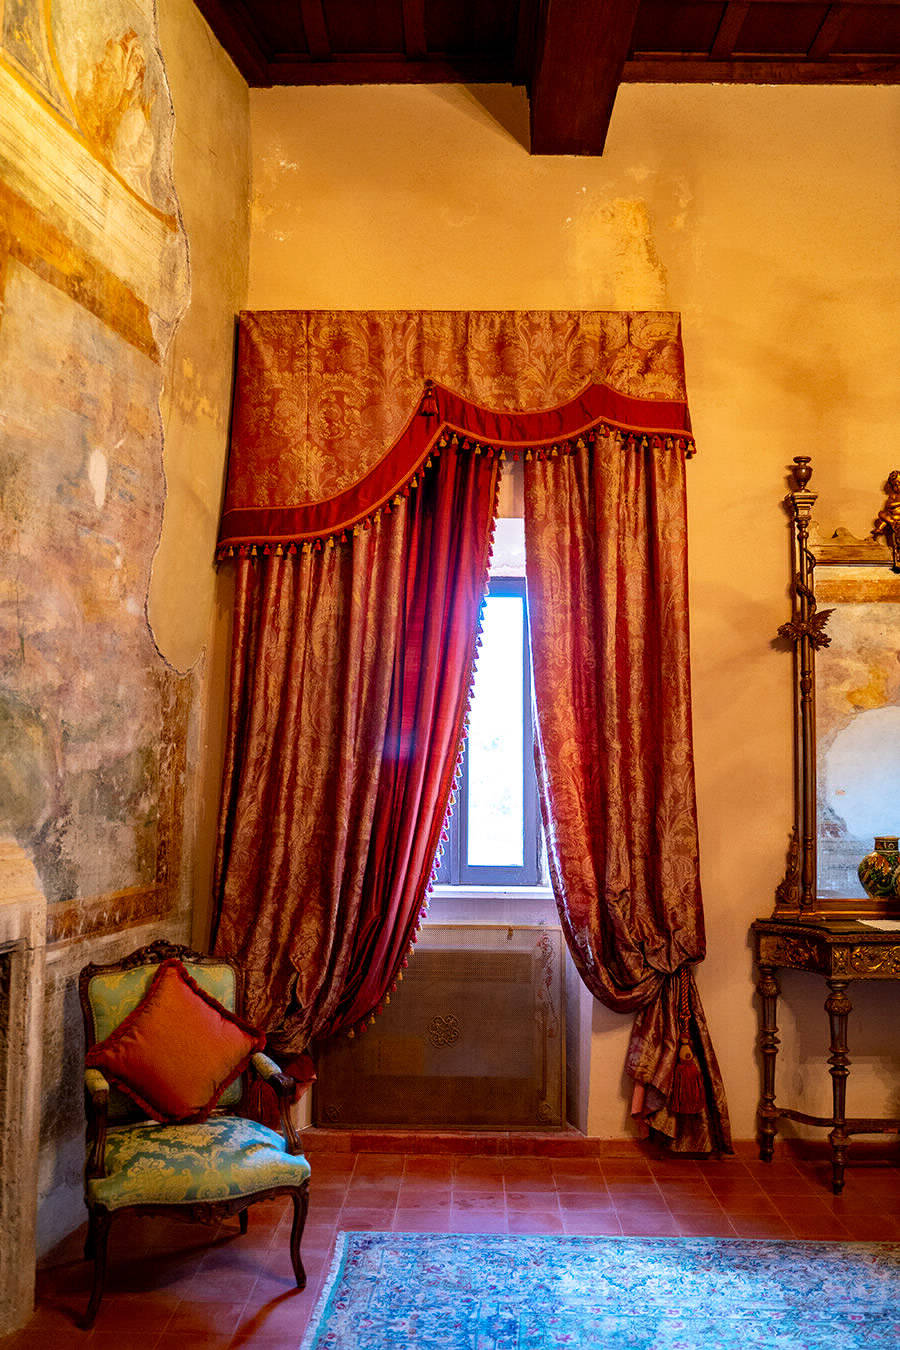 Panoramica lato destro - Castello Orsini-Cesi -Borghese ospitalità, cultura al centro dell'antico borgo.